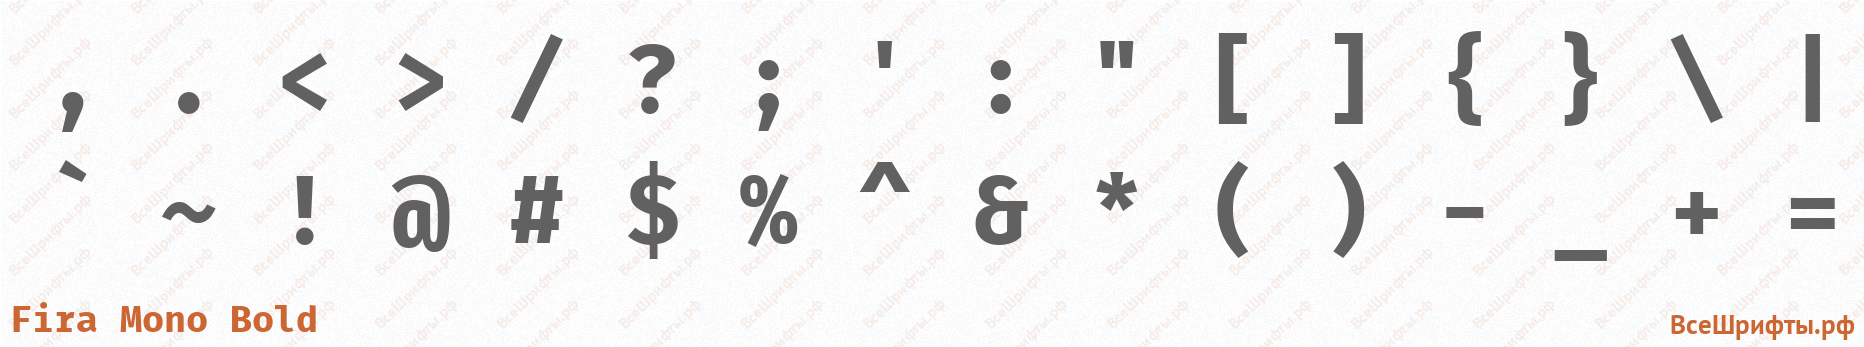 Шрифт Fira Mono Bold со знаками препинания и пунктуации